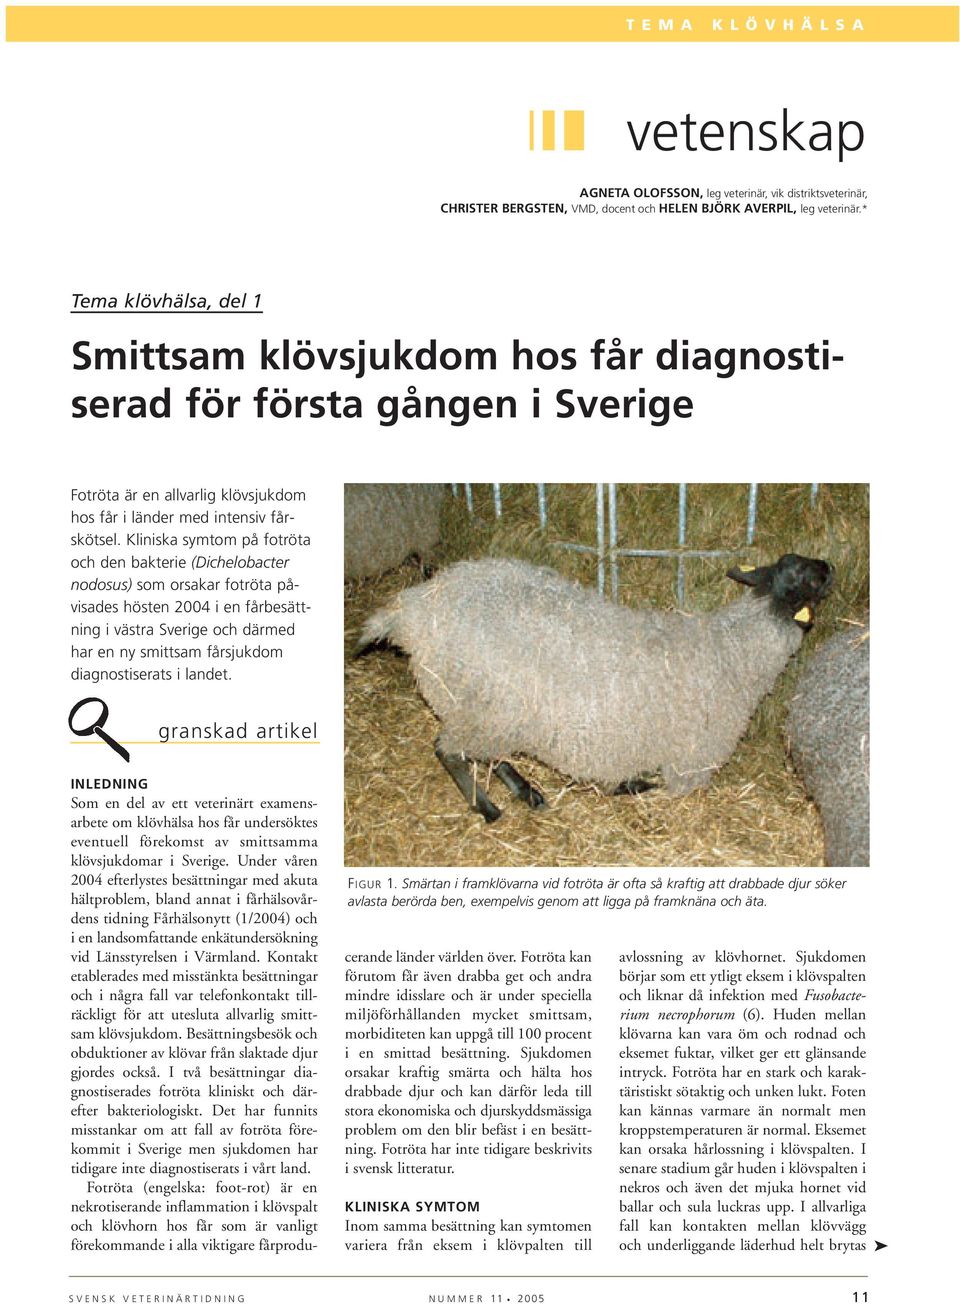 Kliniska symtom på fotröta och den bakterie (Dichelobacter nodosus) som orsakar fotröta påvisades hösten 2004 i en fårbesättning i västra Sverige och därmed har en ny smittsam fårsjukdom